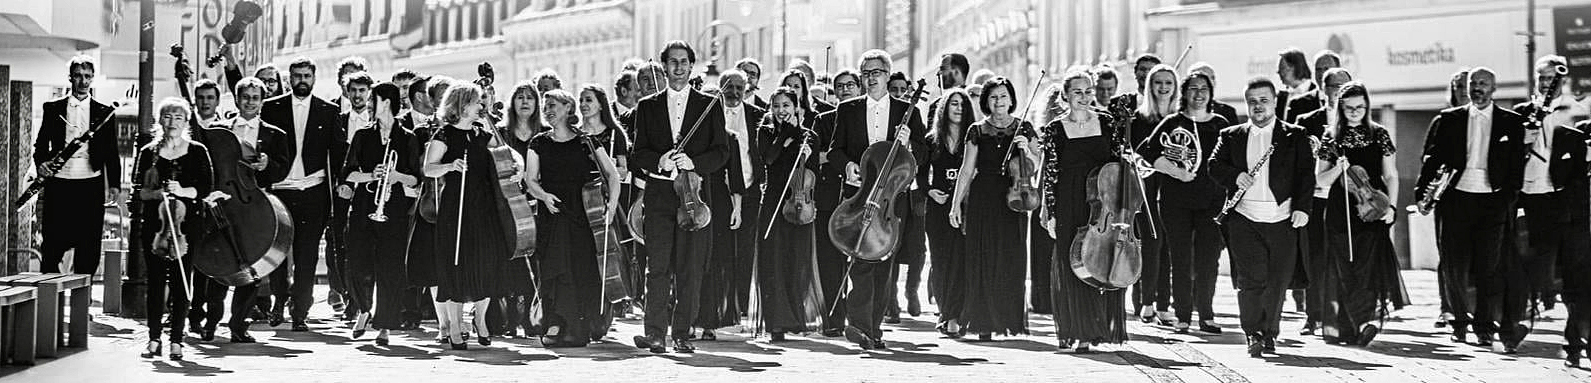 členové a členky orchestru s nástroji jdou městem